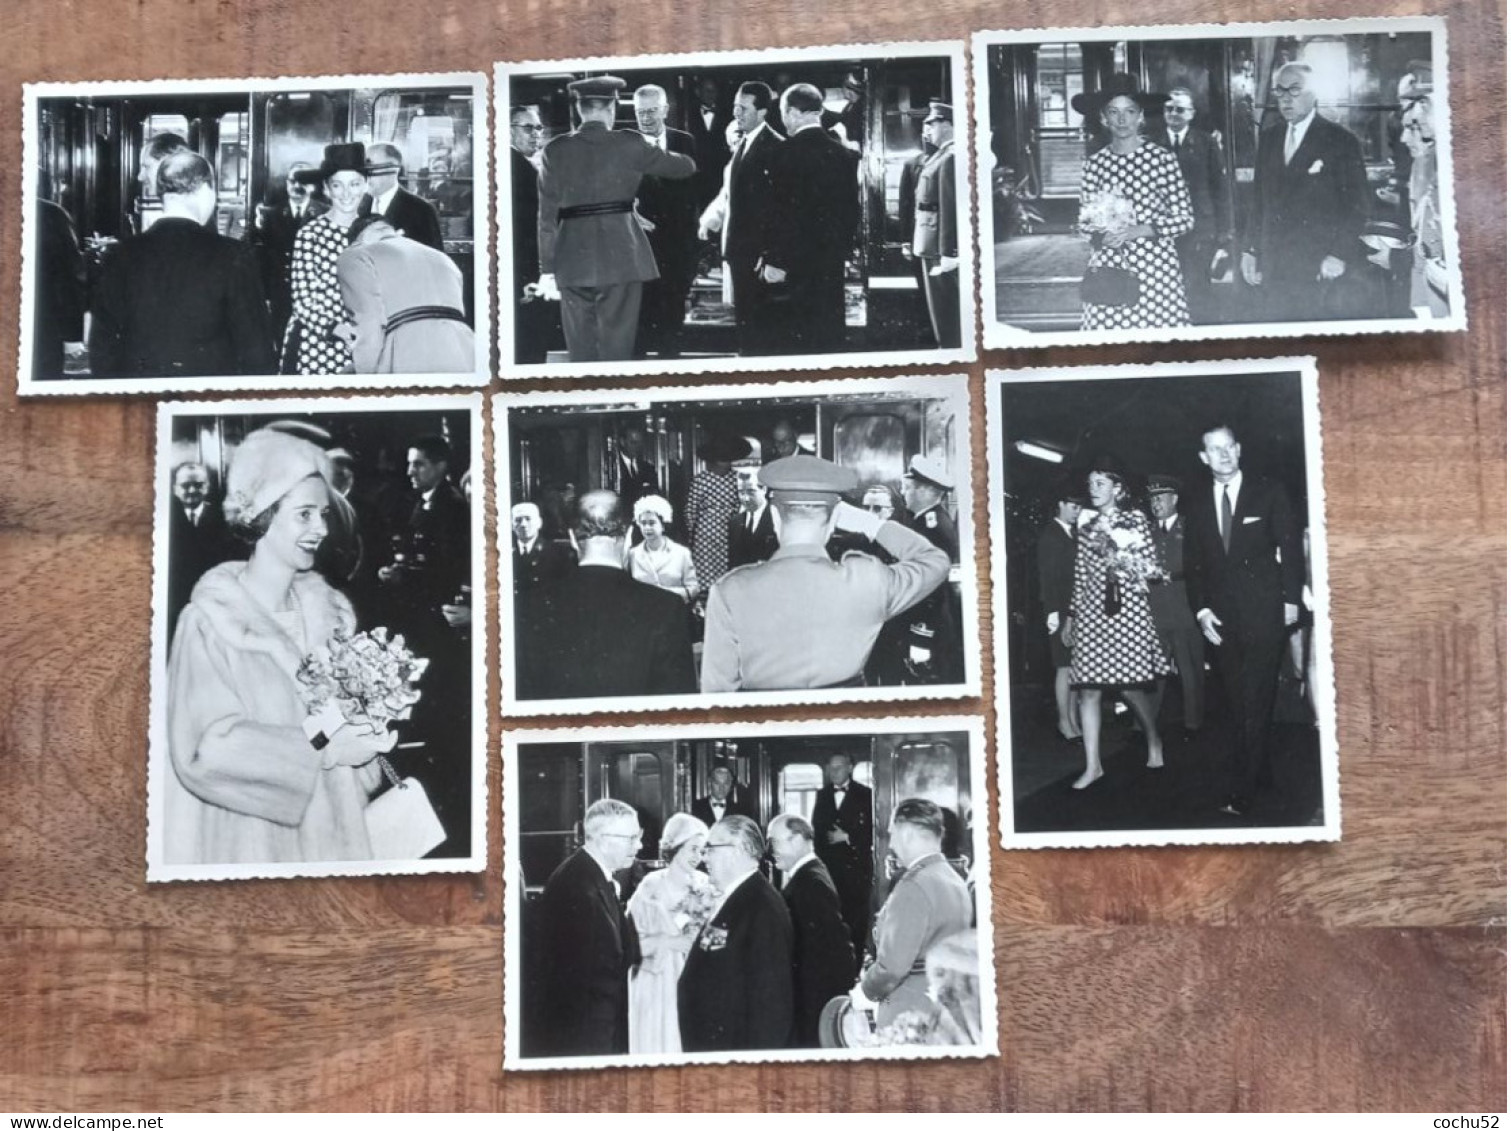 7 Photos N/b---Visite Royale : Au Printemps 1966, Liège Accueillait Elisabeth II (12,5cm X 8,5 Cm) - Berühmtheiten